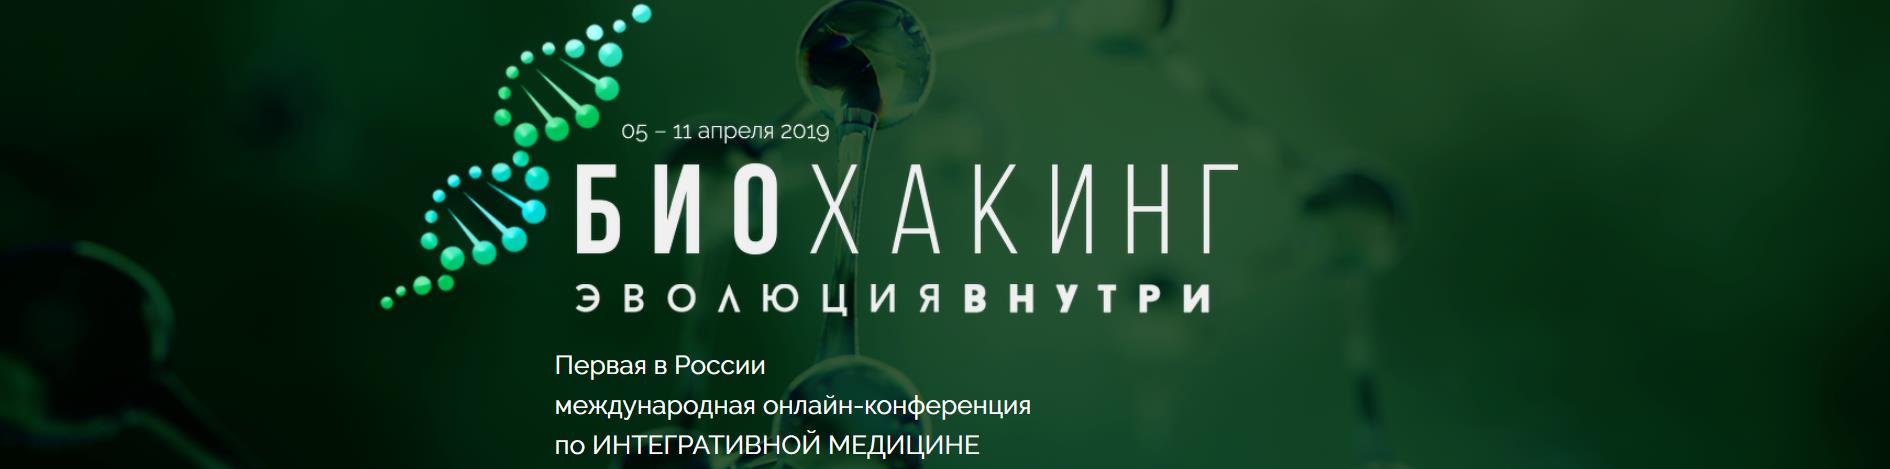 Первая в России международная онлайн-конференция по ИНТЕГРАТИВНОЙ МЕДИЦИНЕ 